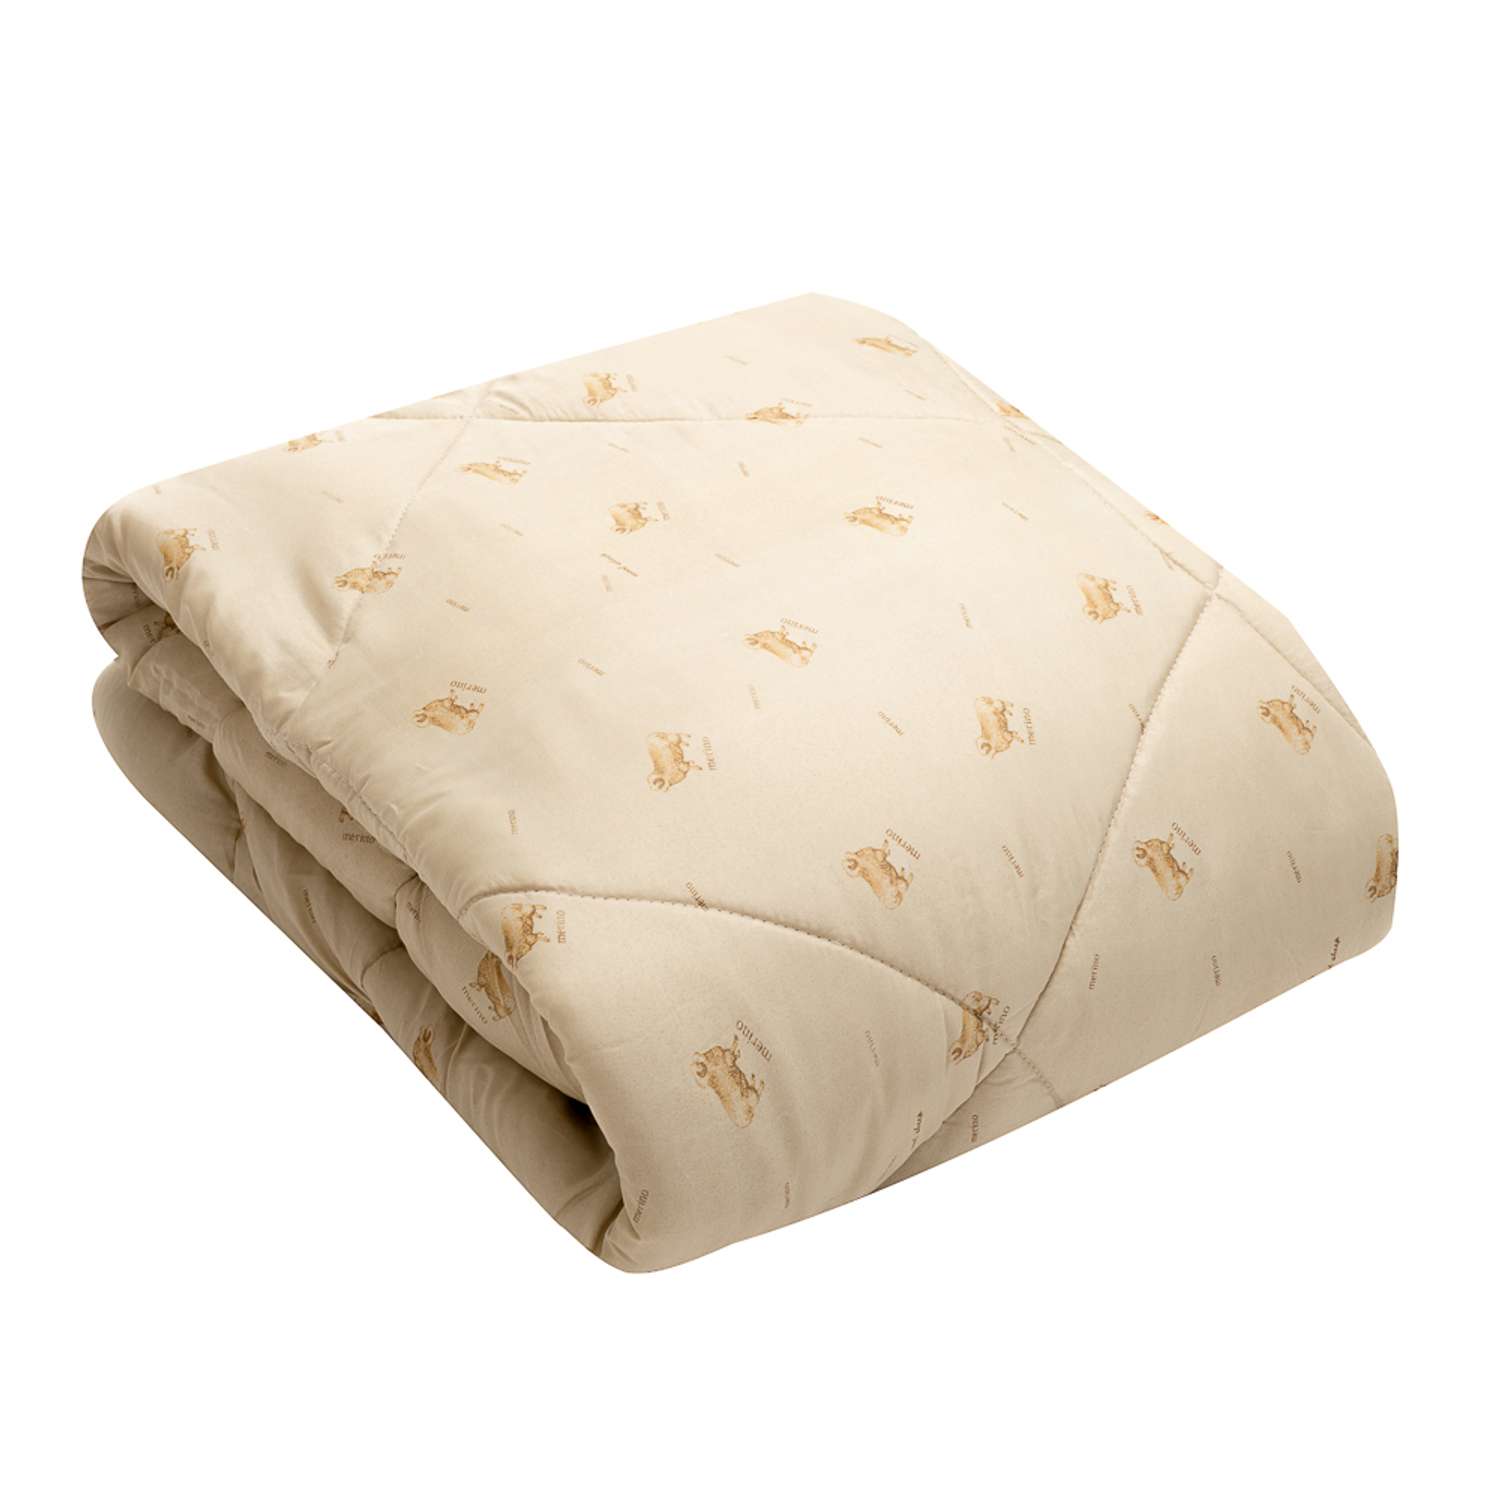 Одеяло 2 спальное Vesta Меринос Клео теплое 172х205см - фото 1